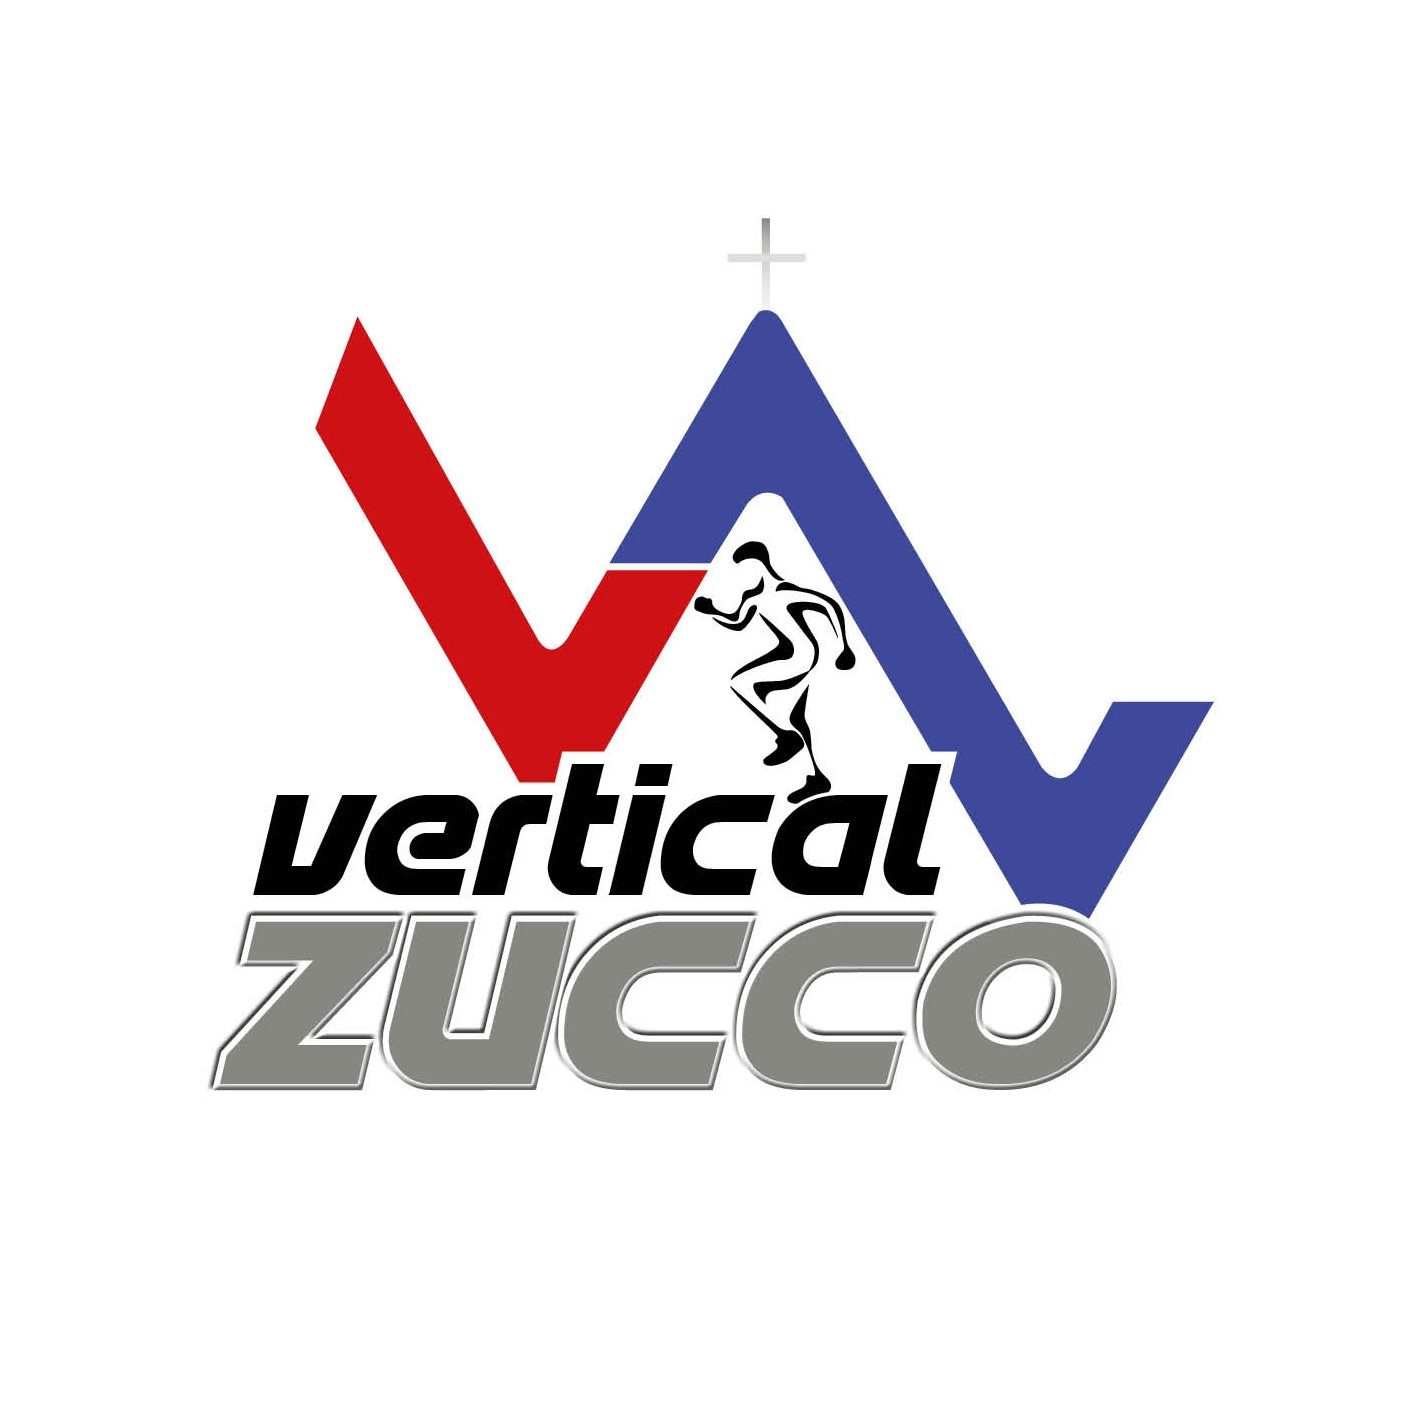 Vertical Zucco